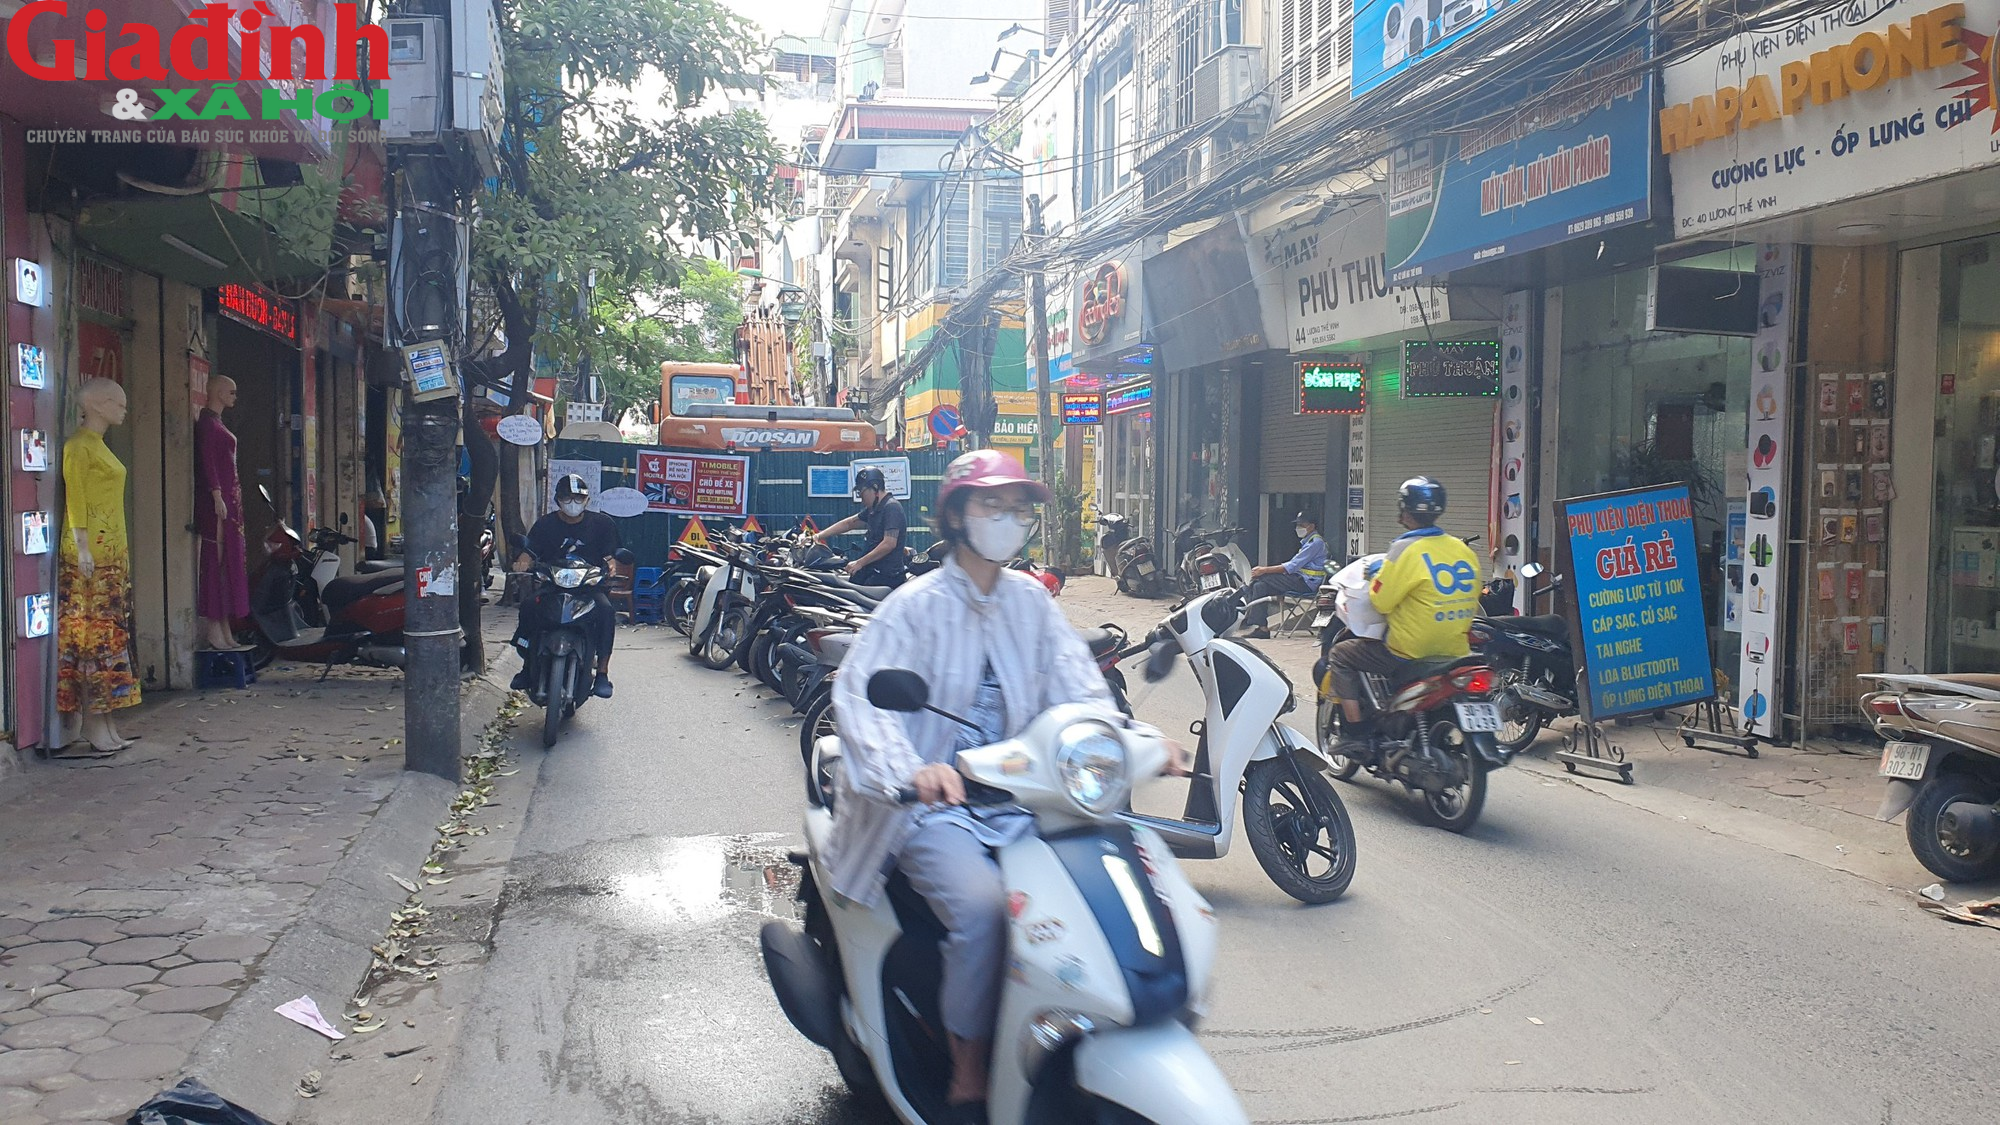 Hà Nội: Người dân khổ sở khi di chuyển qua đường Lương Thế Vinh - Ảnh 3.